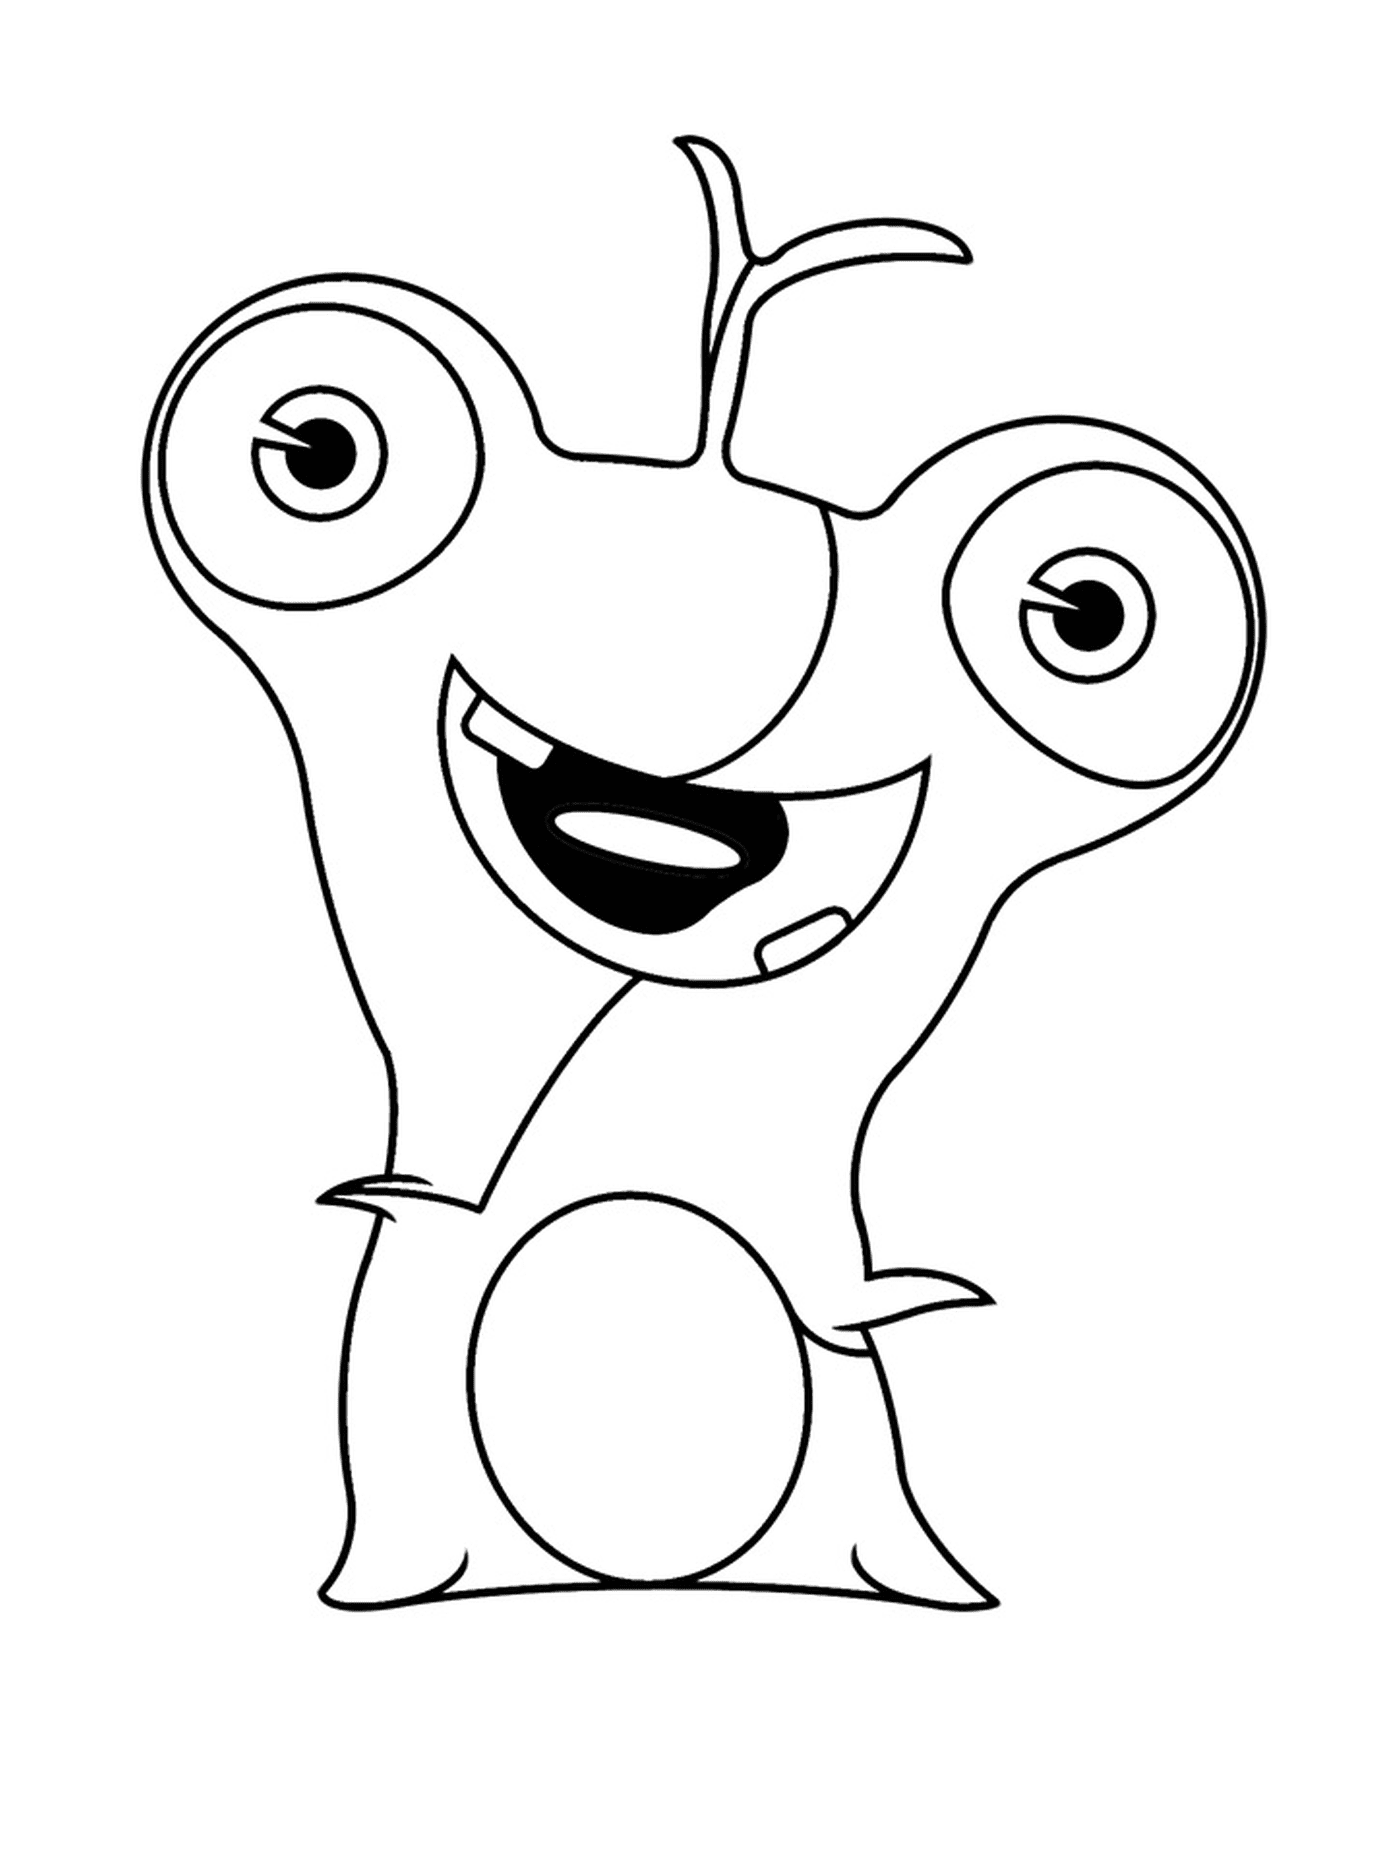  Polero, personaggio dei cartoni animati 